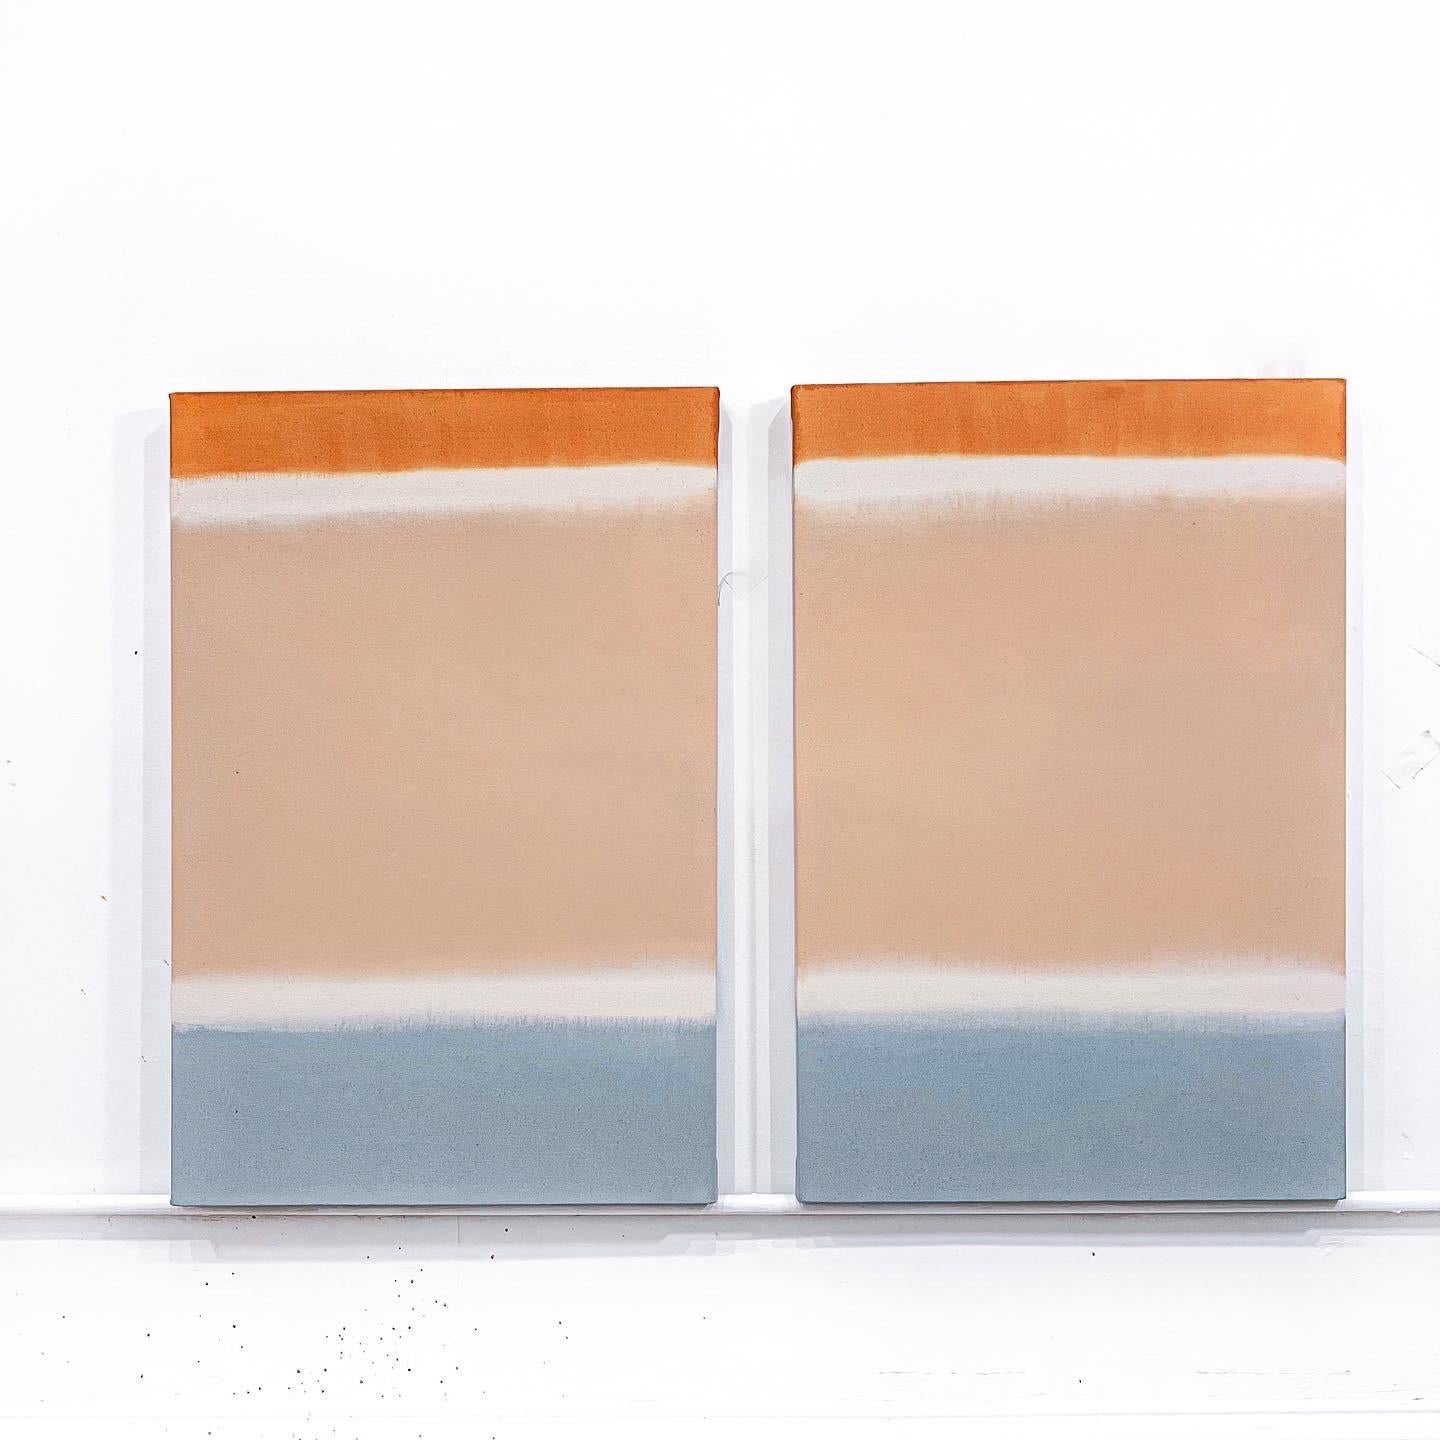 Peinture abstraite de champs de couleurs, gris bleu, or orange neutre pêche, beige. Peinture acrylique abstraite Peinture minimaliste 